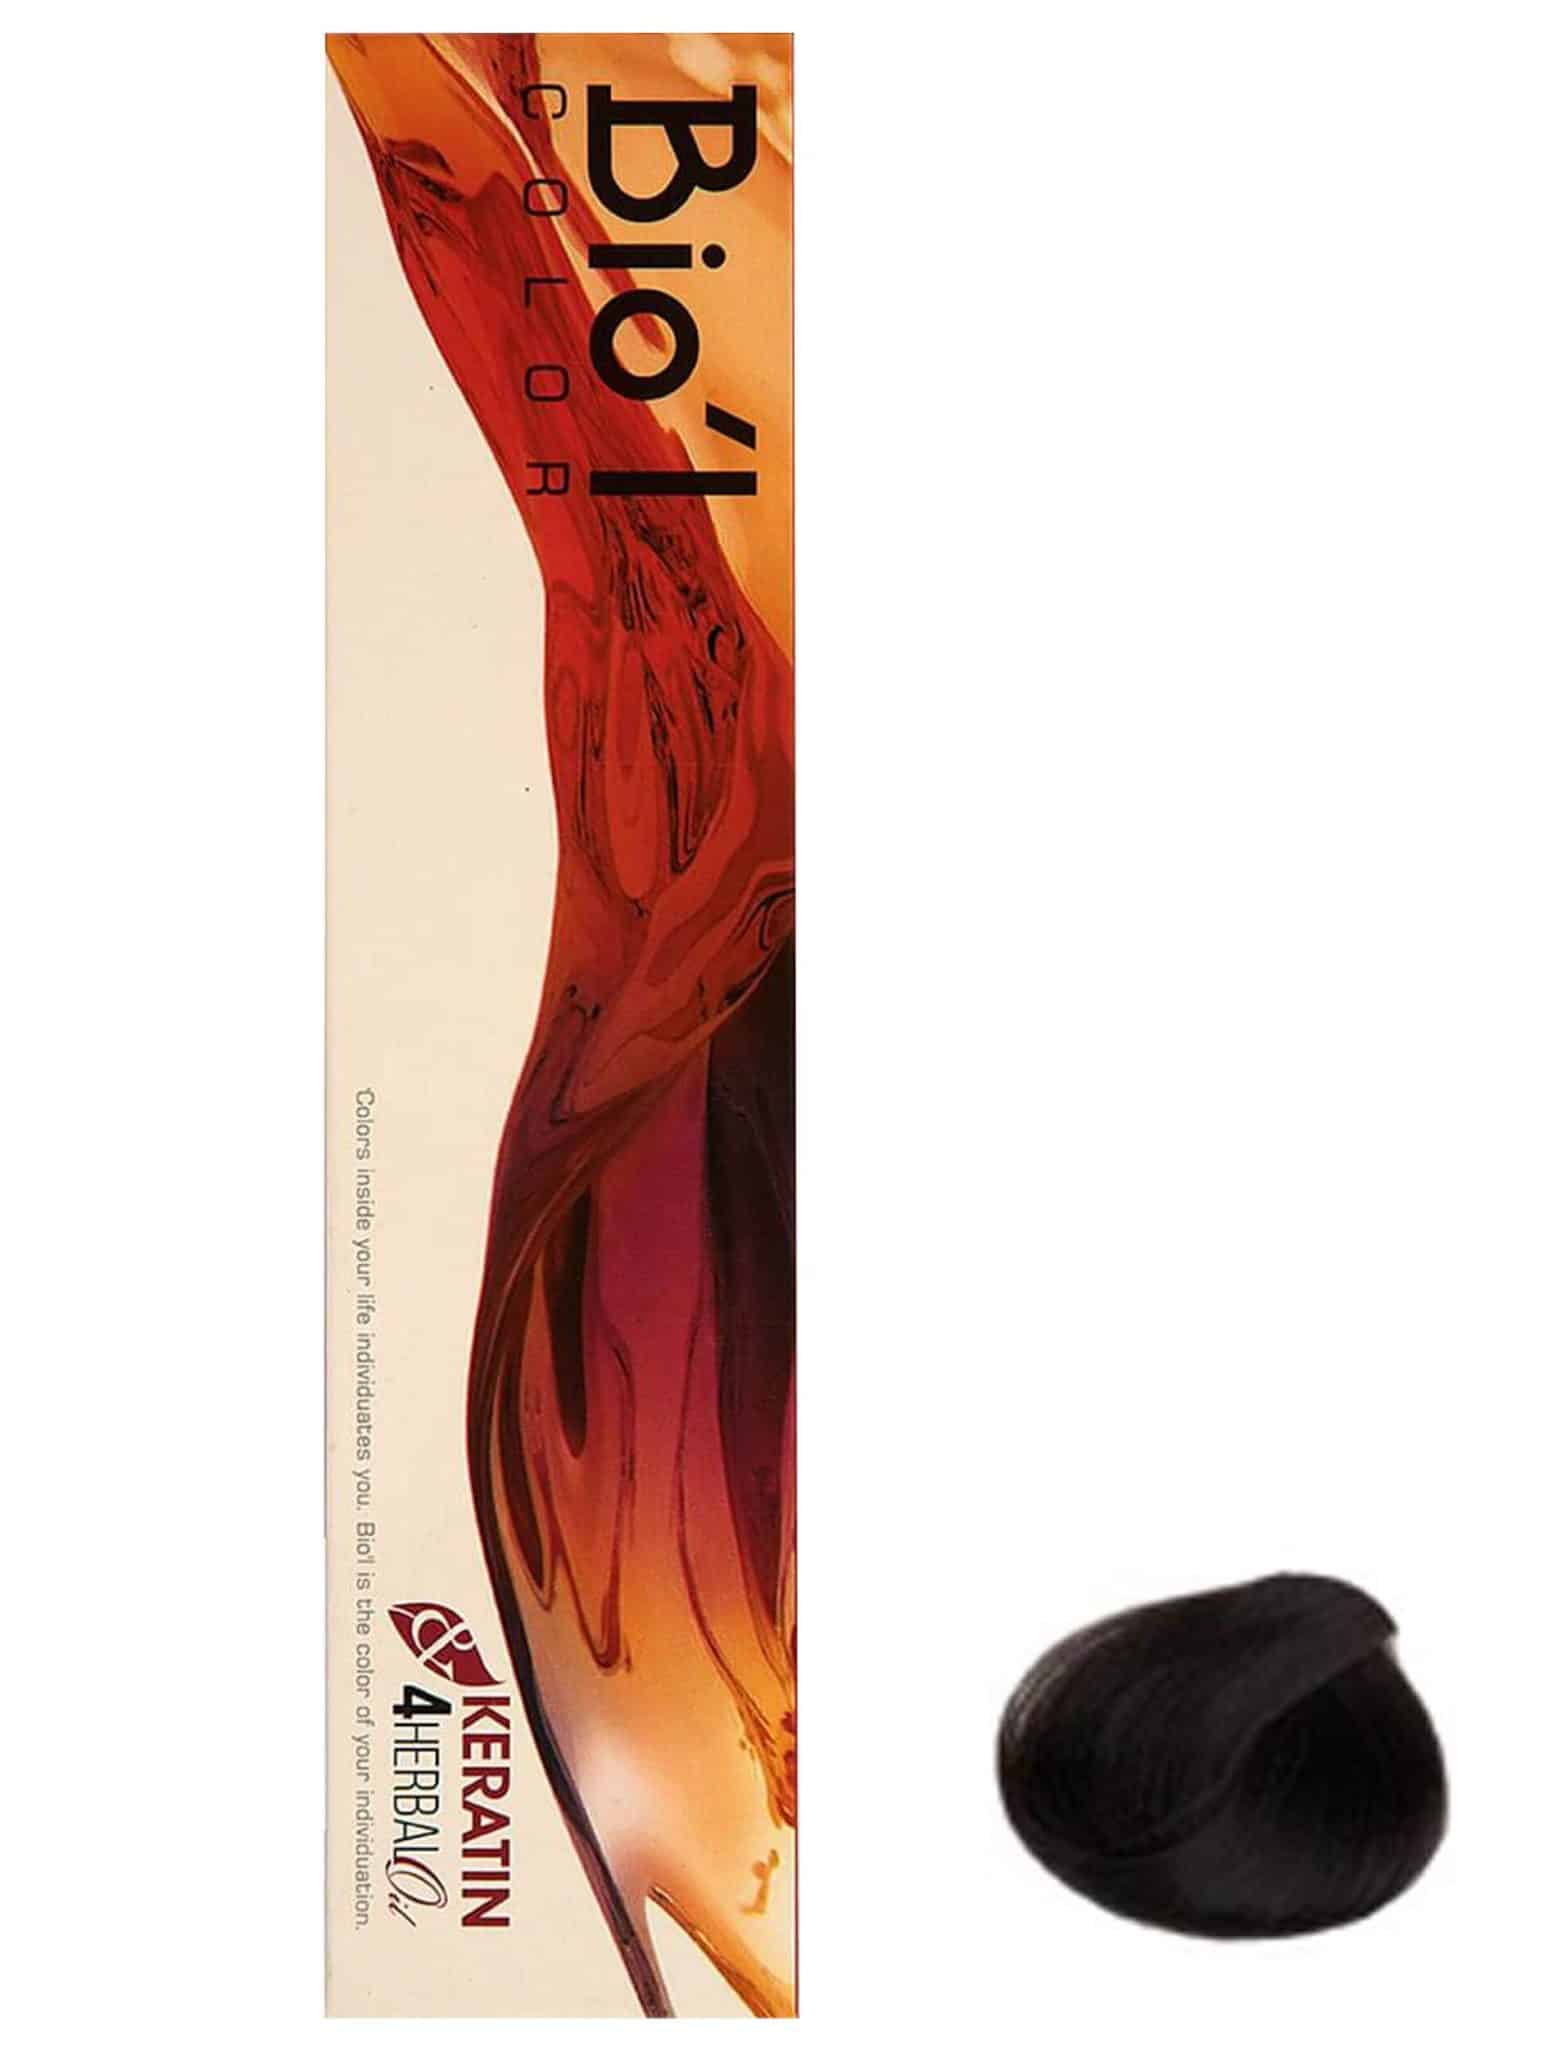 رنگ موی بیول سری Natural مدل HERBAL شماره 2.0 حجم 100 میلی لیتر رنگ قهوه ای تیره | گارانتی اصالت و سلامت فیزیکی کالا